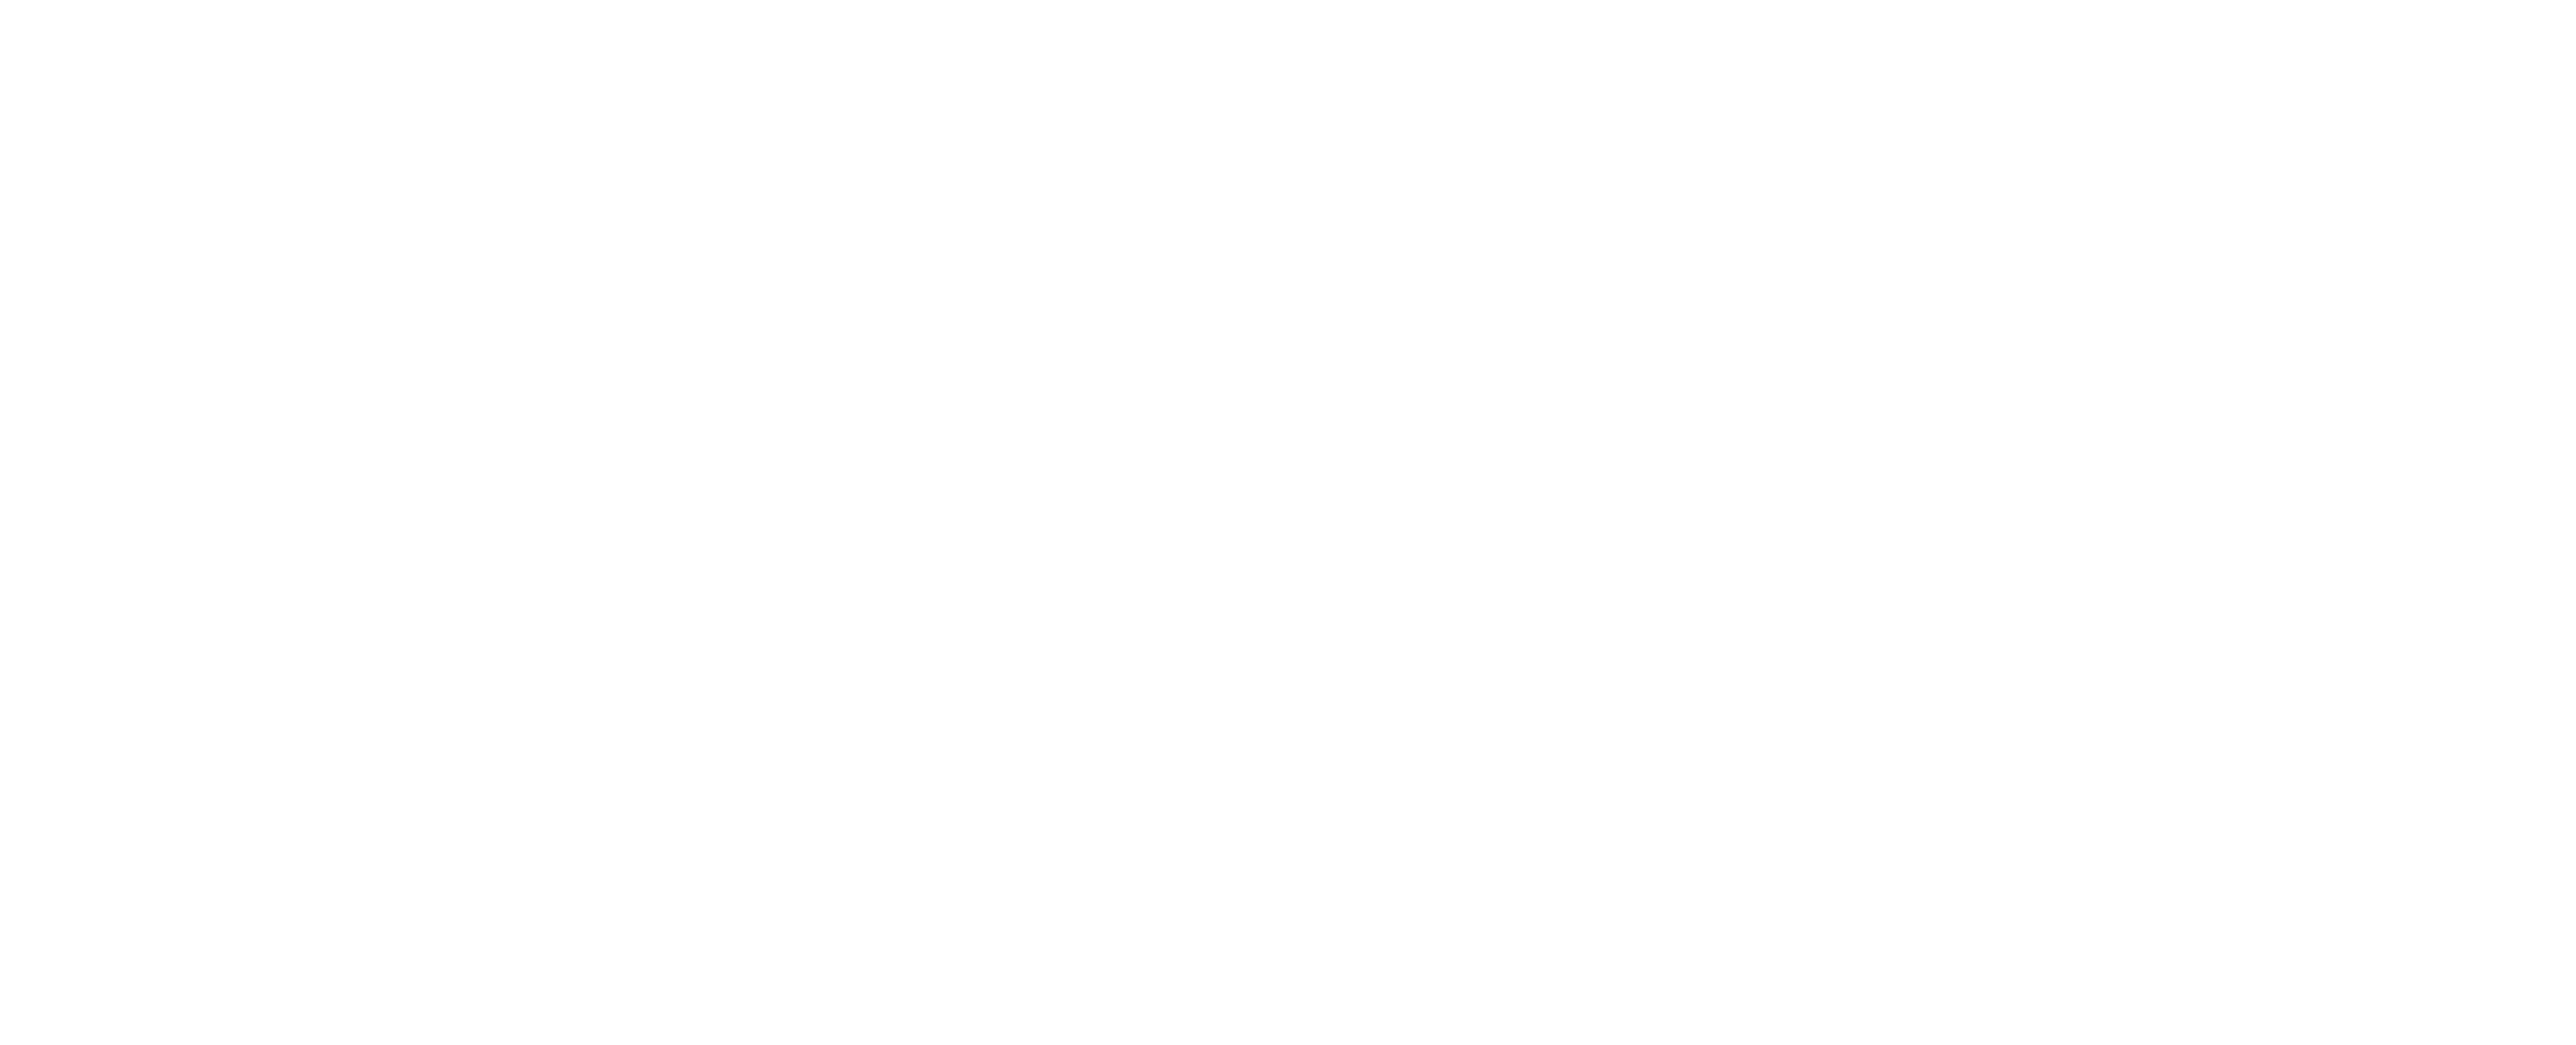 Keller Williams Luxury International